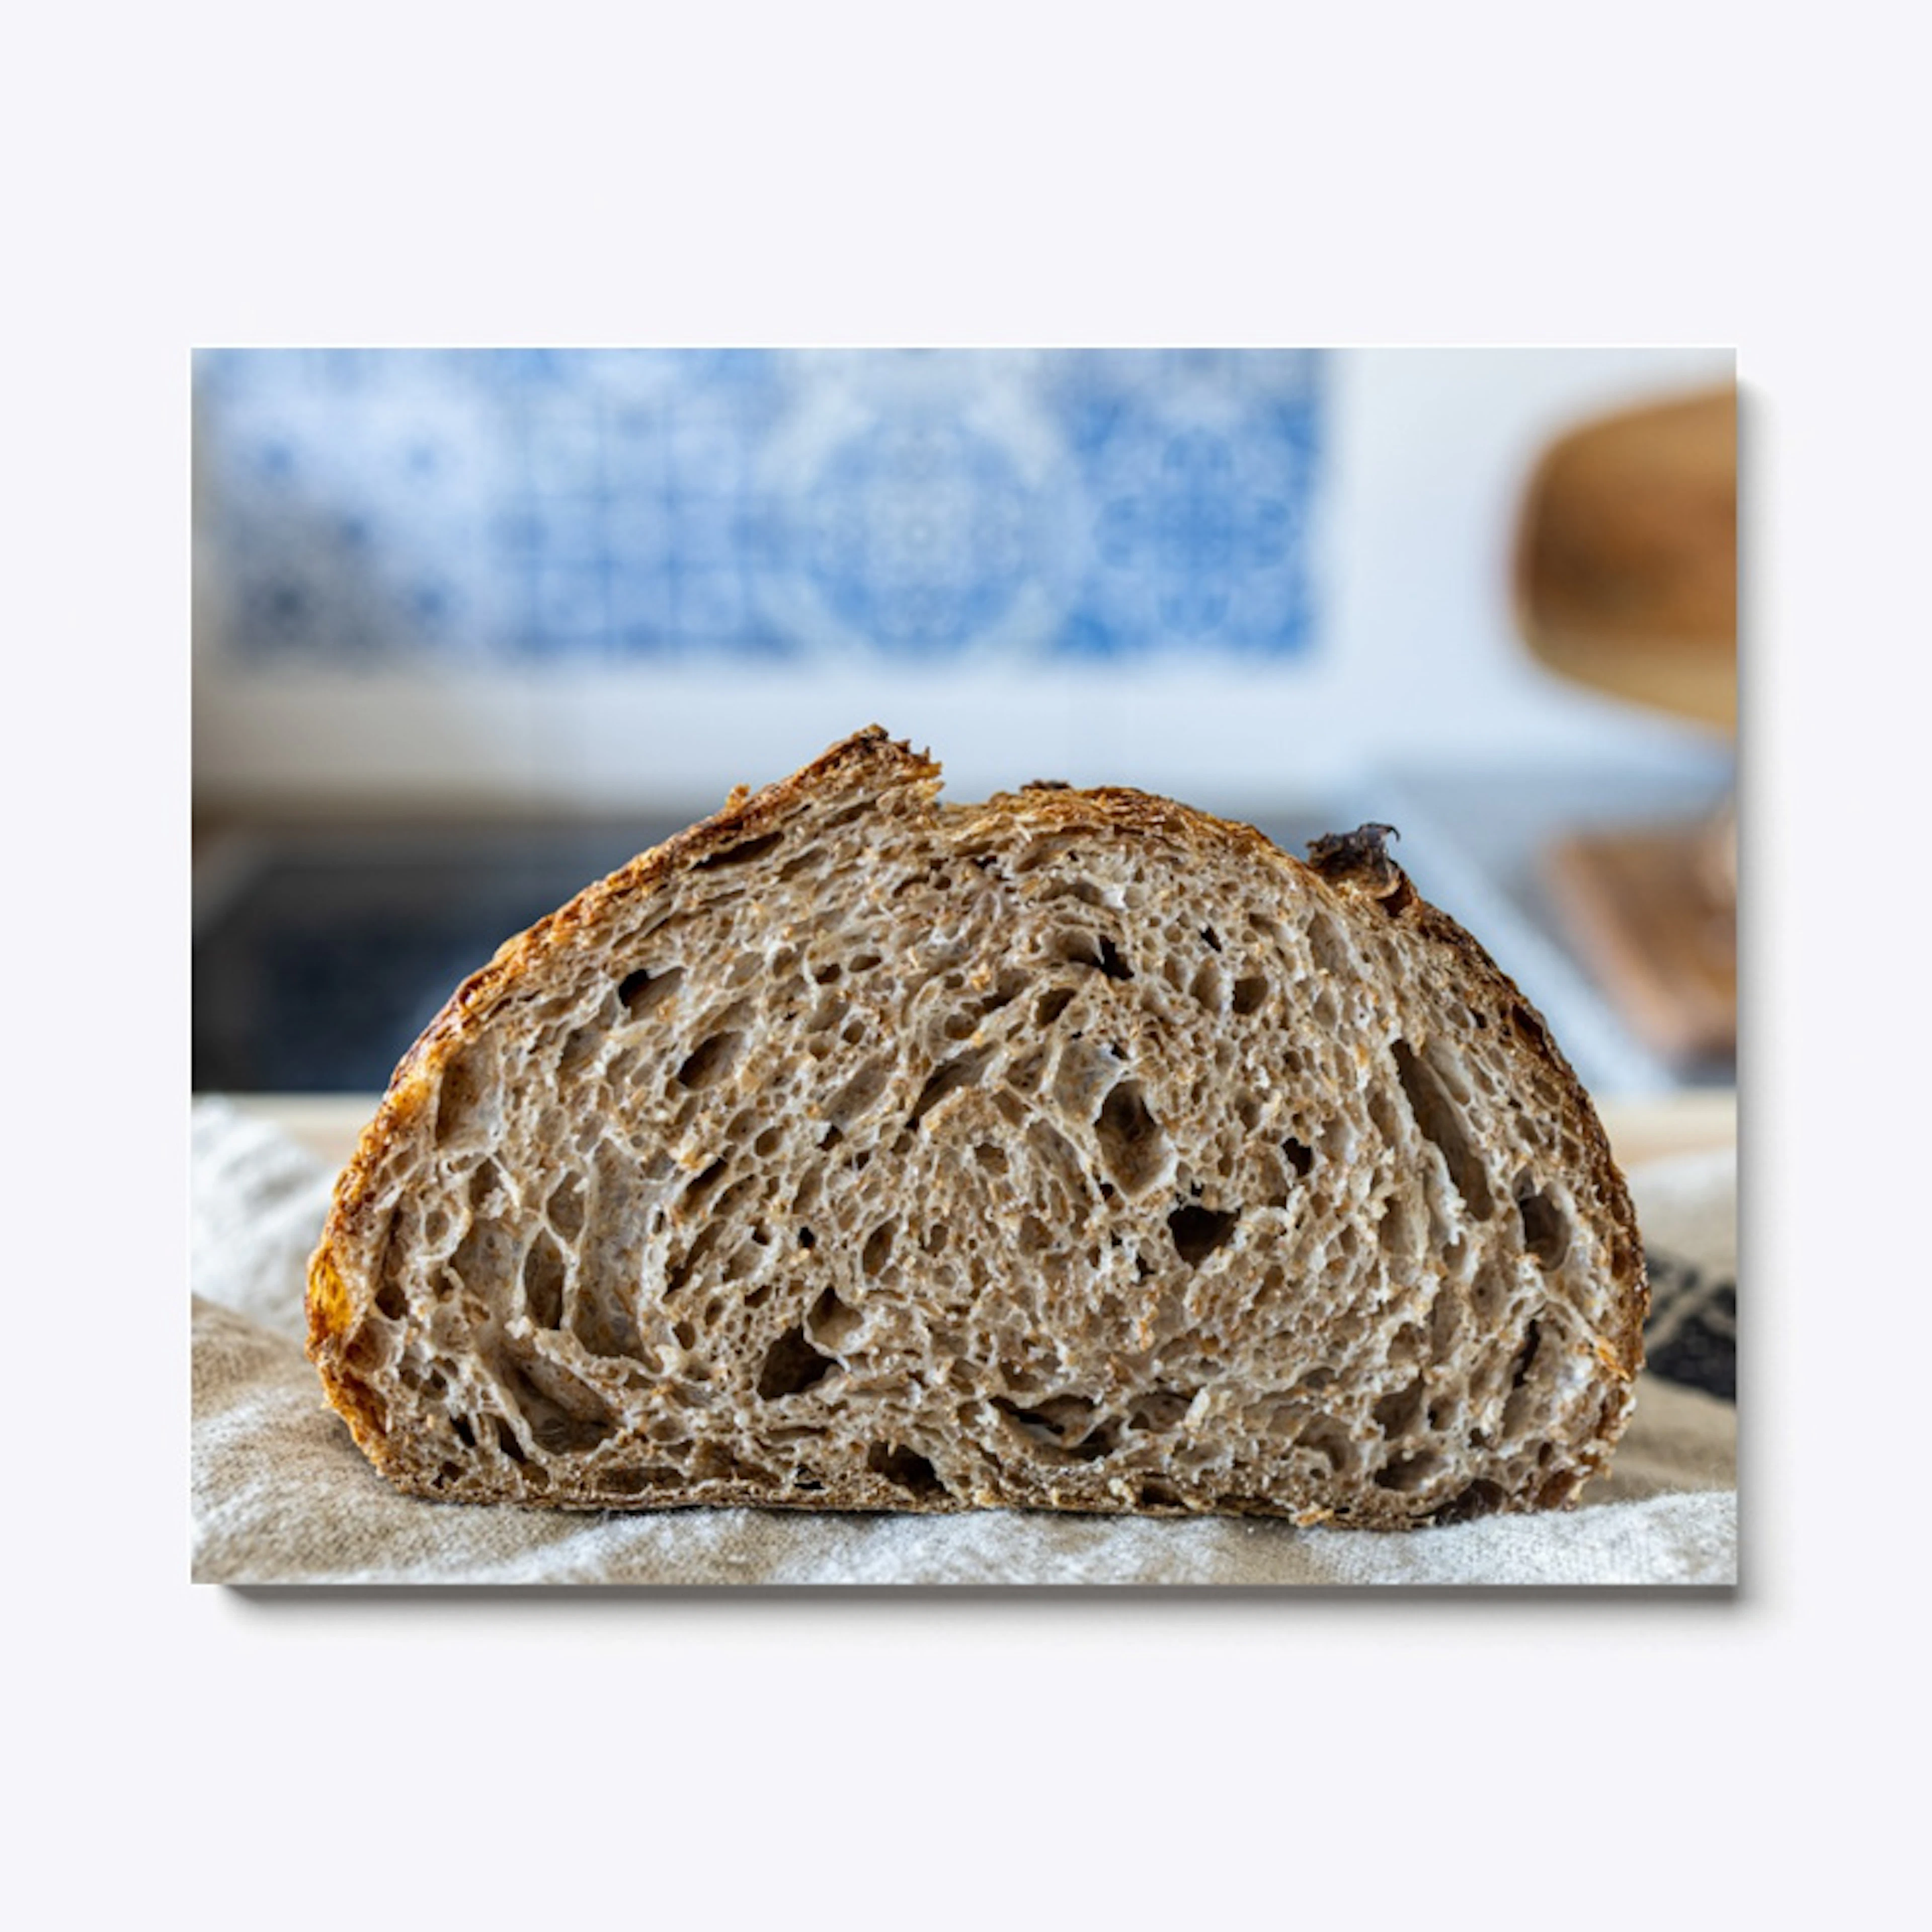 The perfect whole wheat sourdough bread